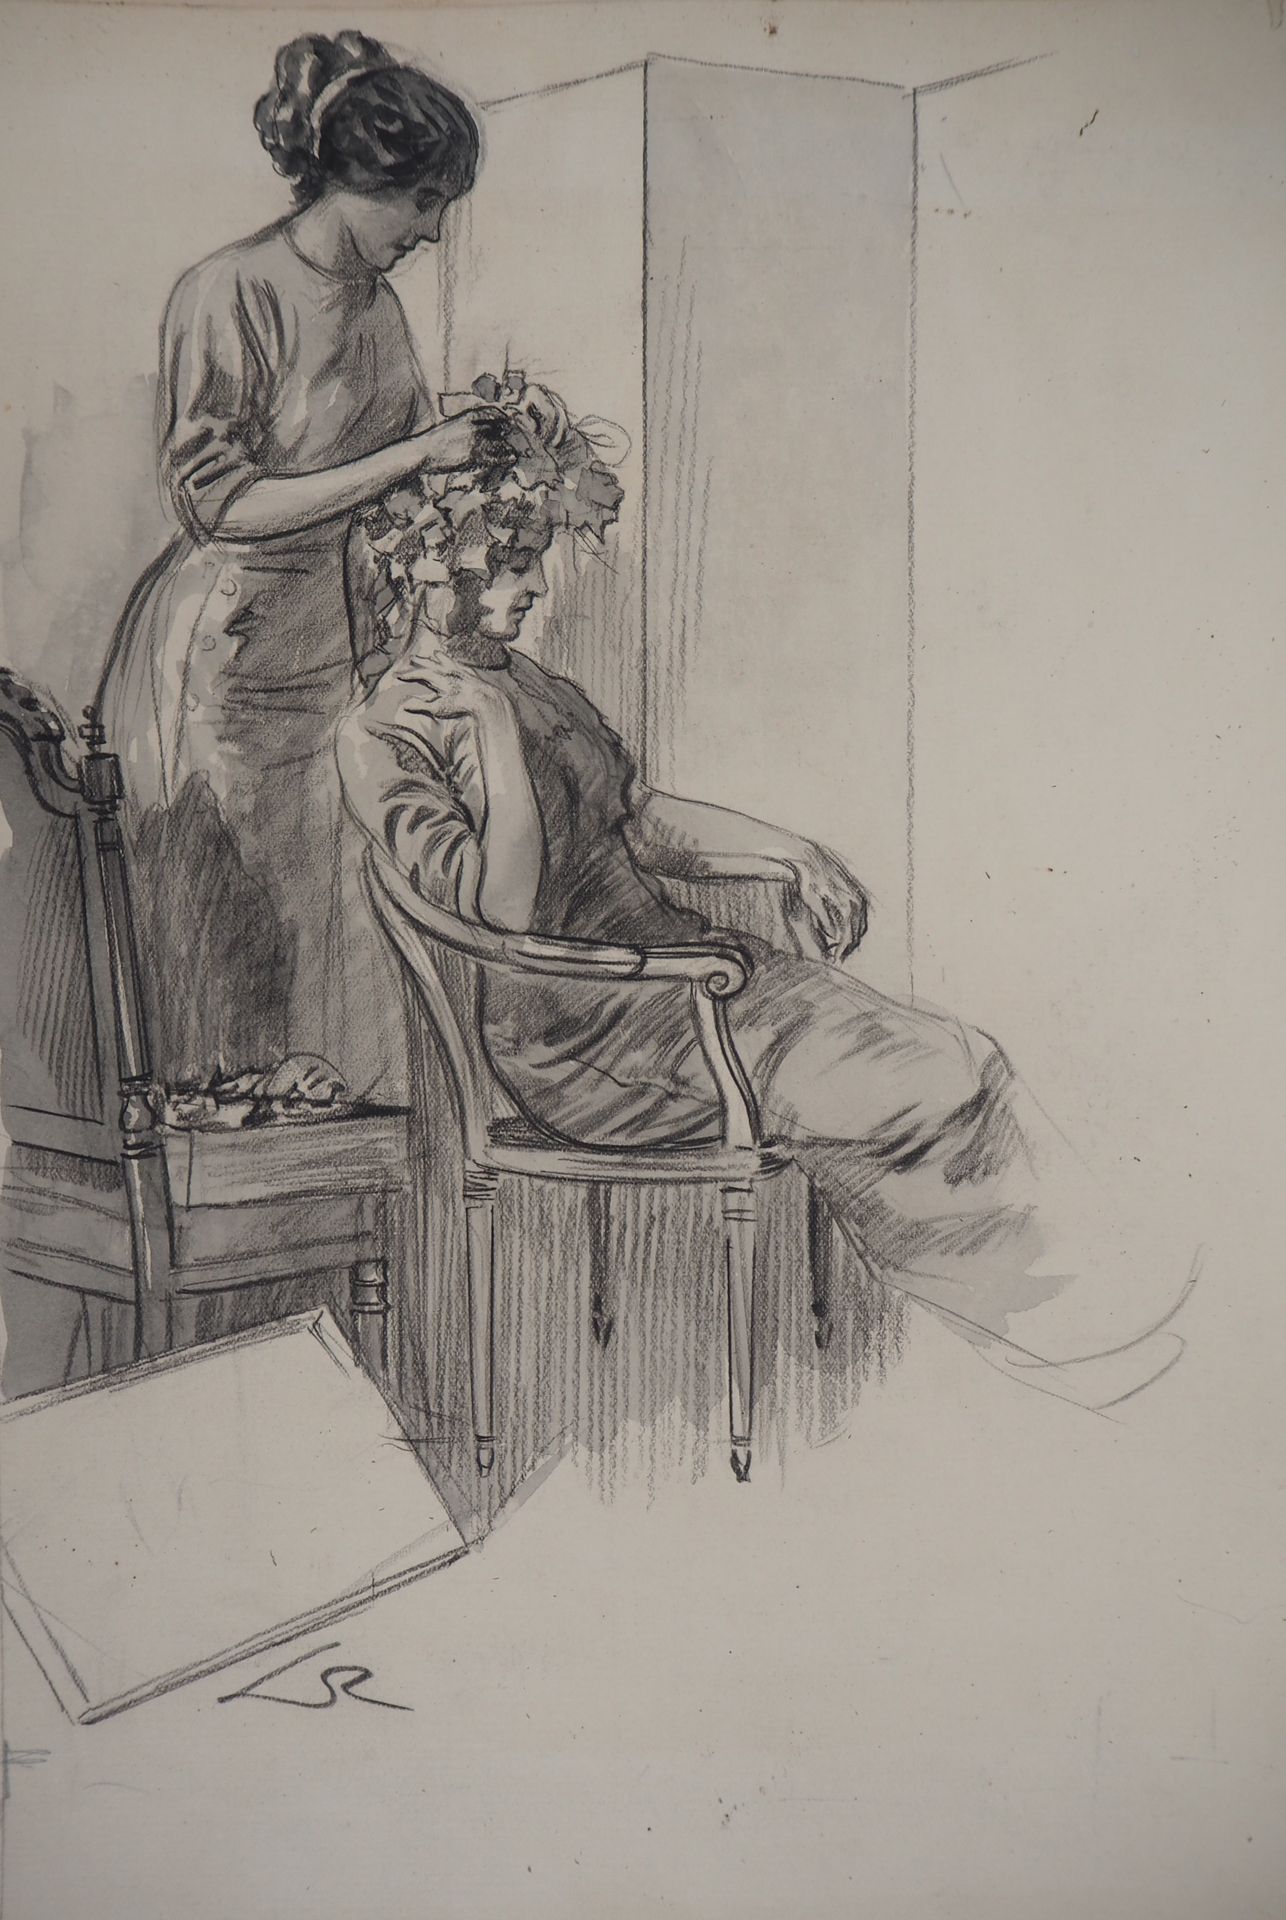 Almery LOBEL-RICHE Alméry LOBEL-RICHE (1880-1950)

En la peluquería, c. 1920

Di&hellip;